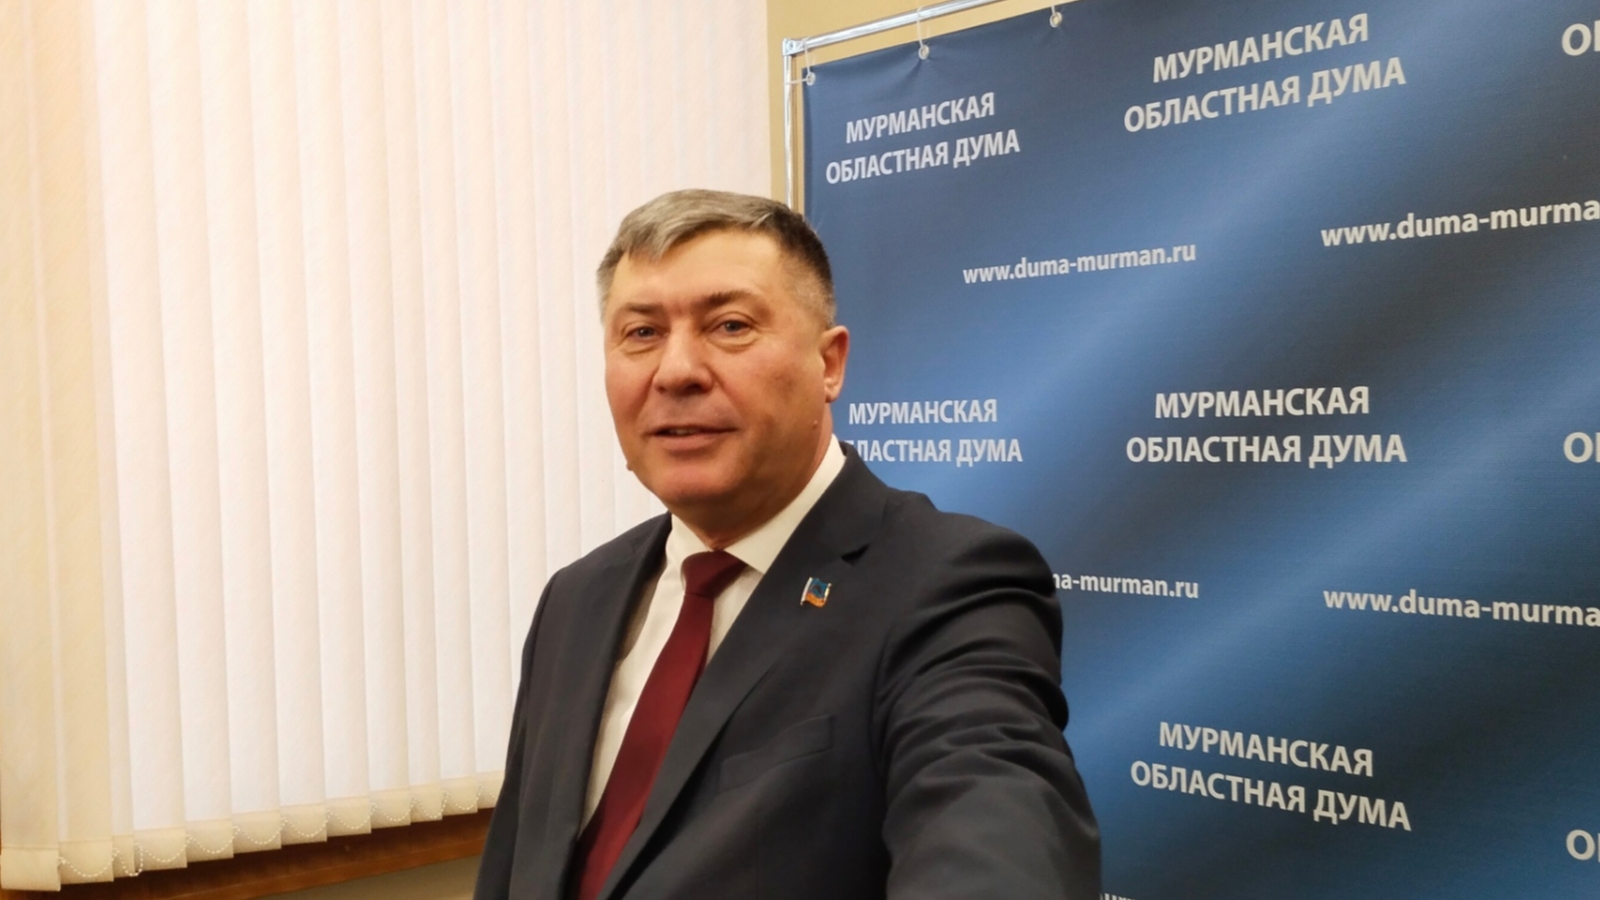 Владимир Мищенко: Об участии вахтовиков в выборах в Заполярье речи не идёт